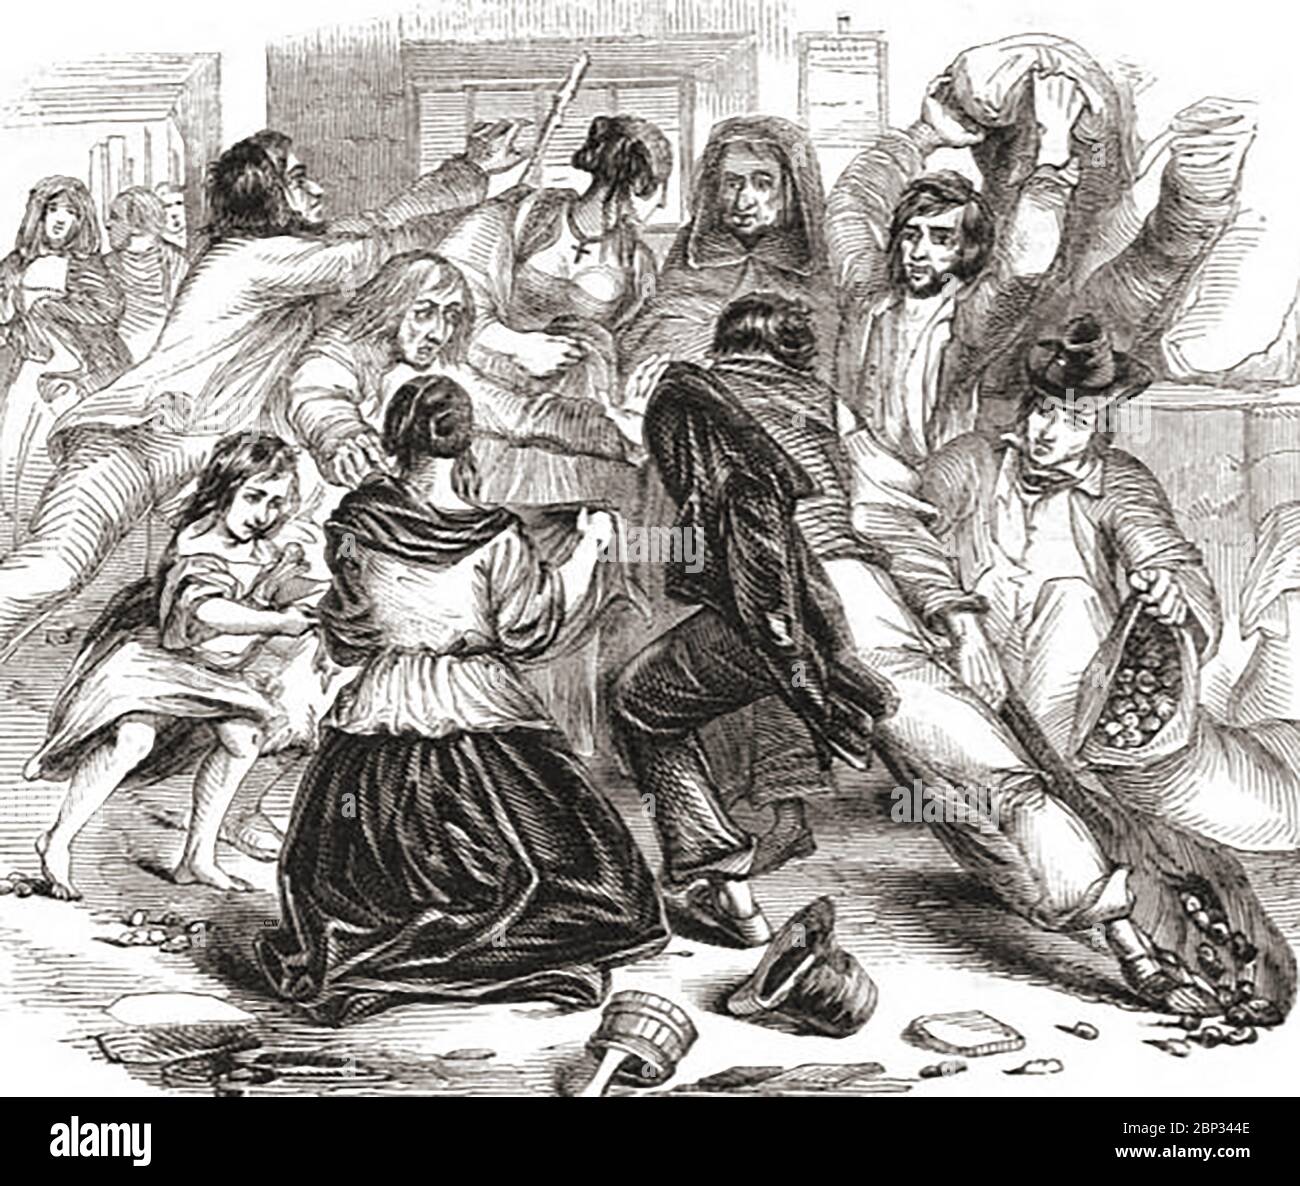 Incisione che mostra un attacco ad un negozio di patate nella città di Galway, Irlanda il 13 giugno 1842 (da un notizia del tempo). Hanno anche attaccato i depositi di farina d'avena nei mulini e distribuito le merci rubate tra loro. Si dice che la rivolta sia stata guidata da donne e bambini, sostenuta dai pescatori di Claddagh. La polizia, i dignitari e i soldati del 30° reggimento che tentarono di fermarli, furono lapidati. Foto Stock